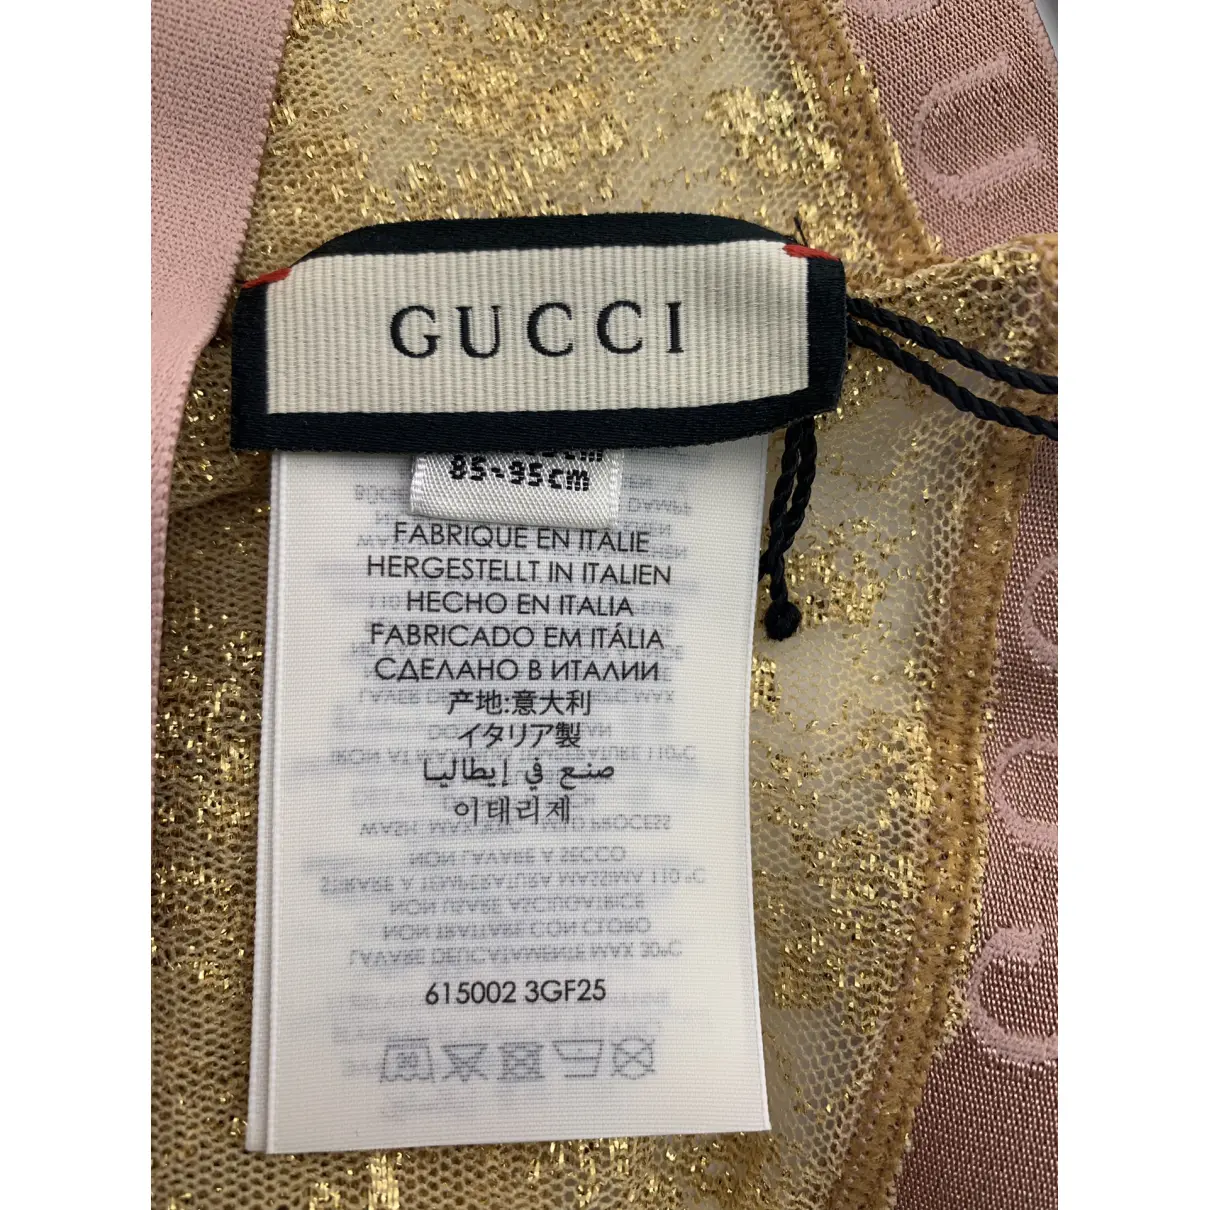 Tight Gucci